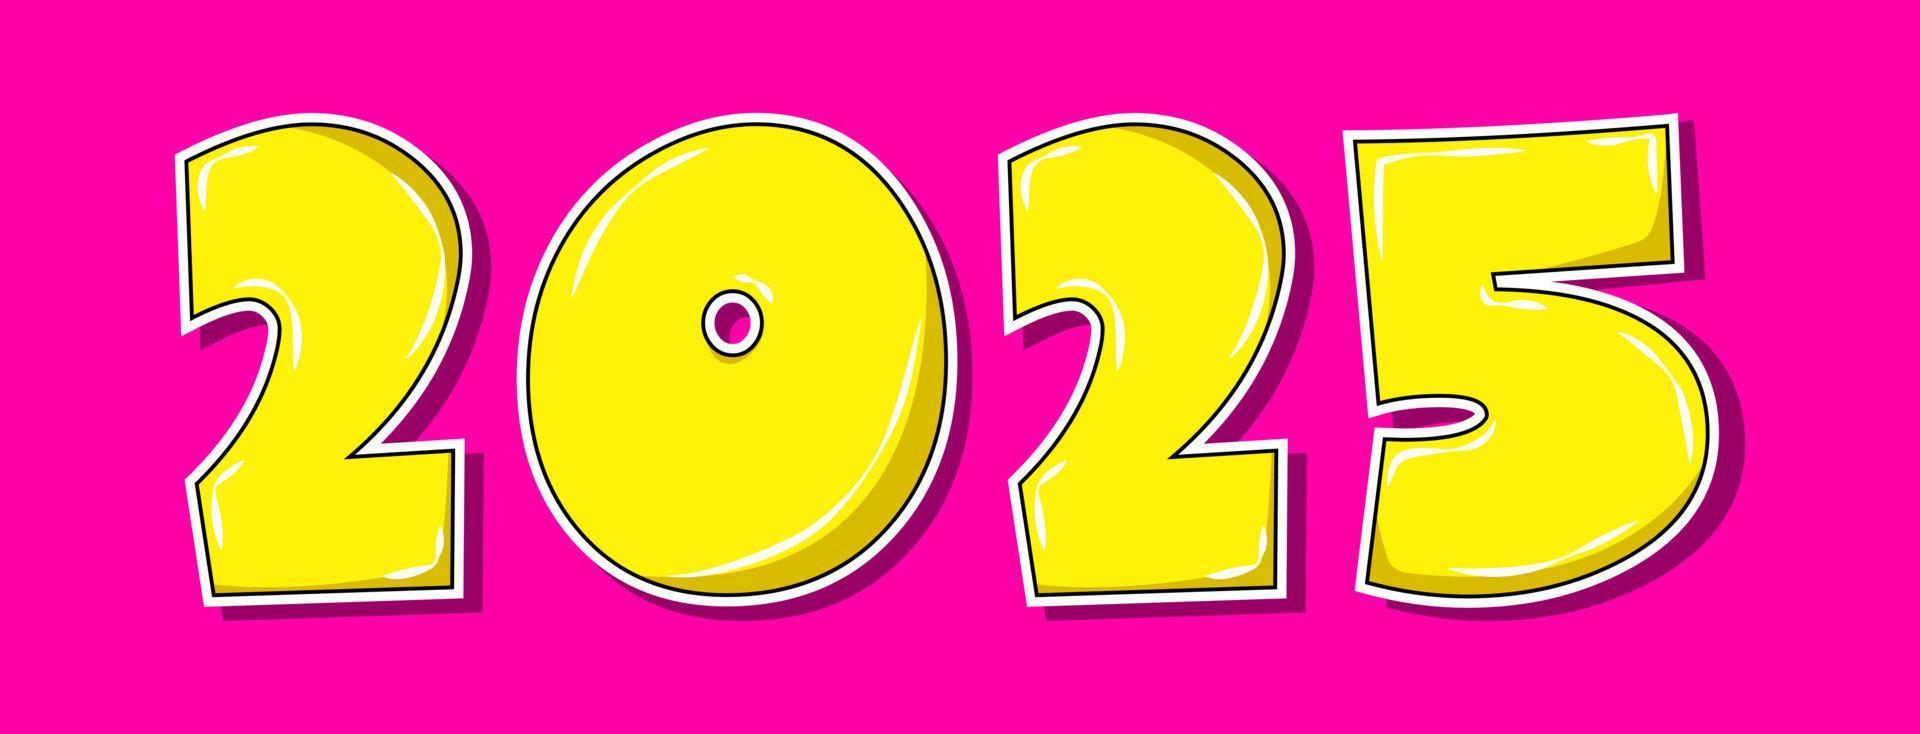 estilo pop art amarillo año 2025 sobre fondo rosa vector